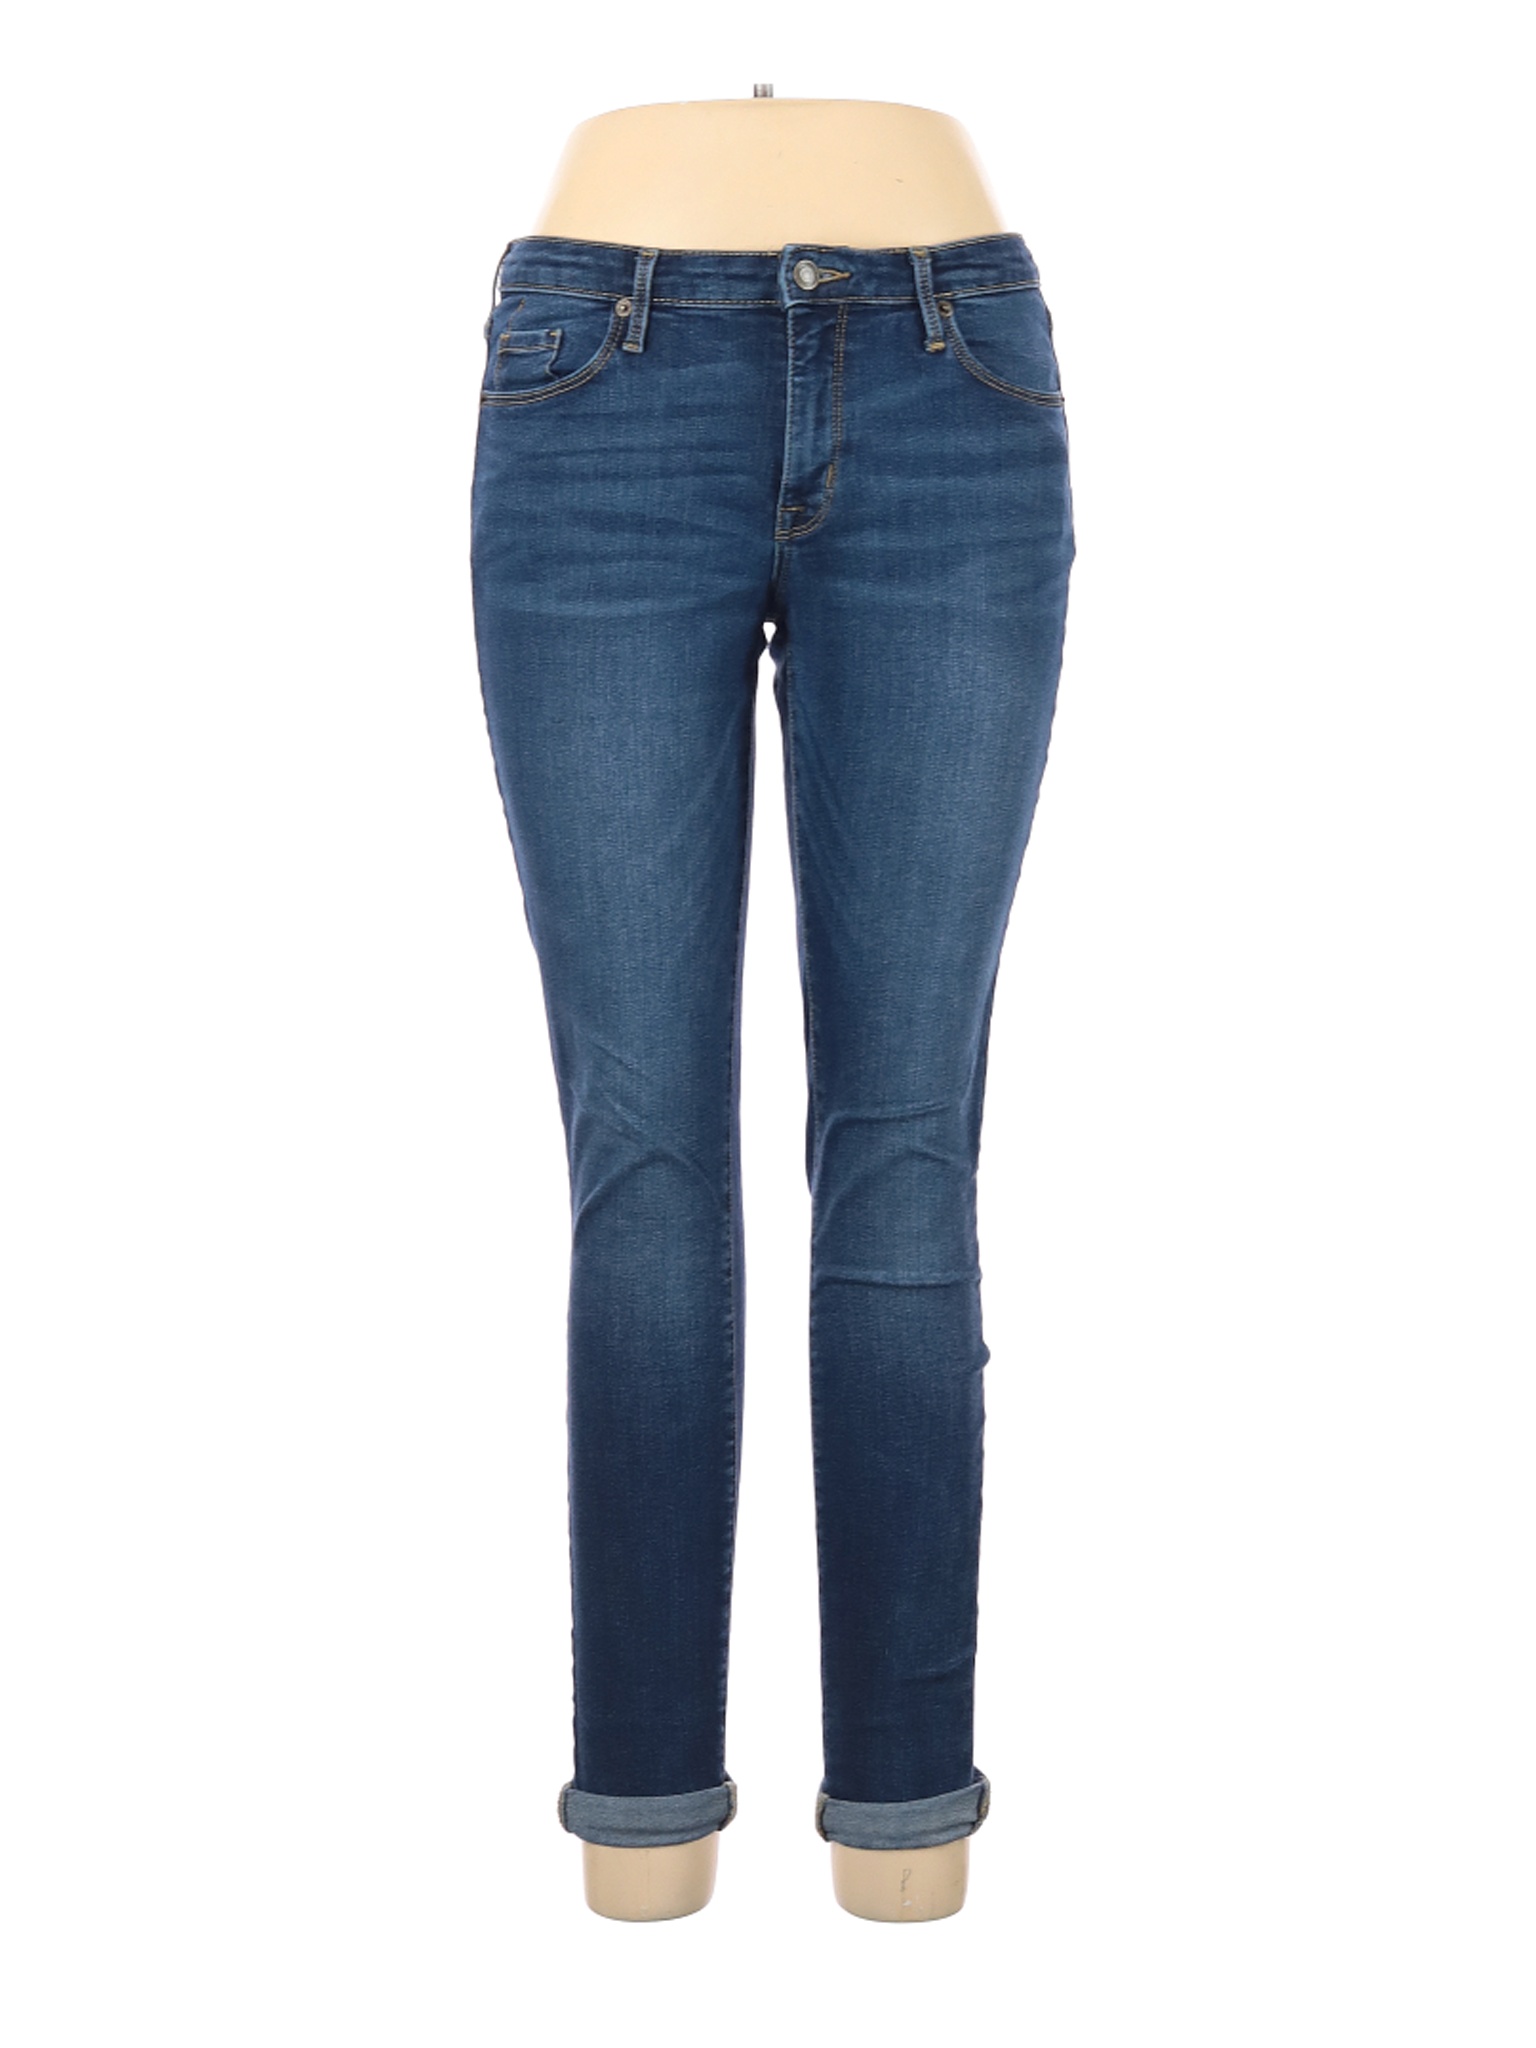 Assorted Brands Women Blue Jeans 30W | eBay